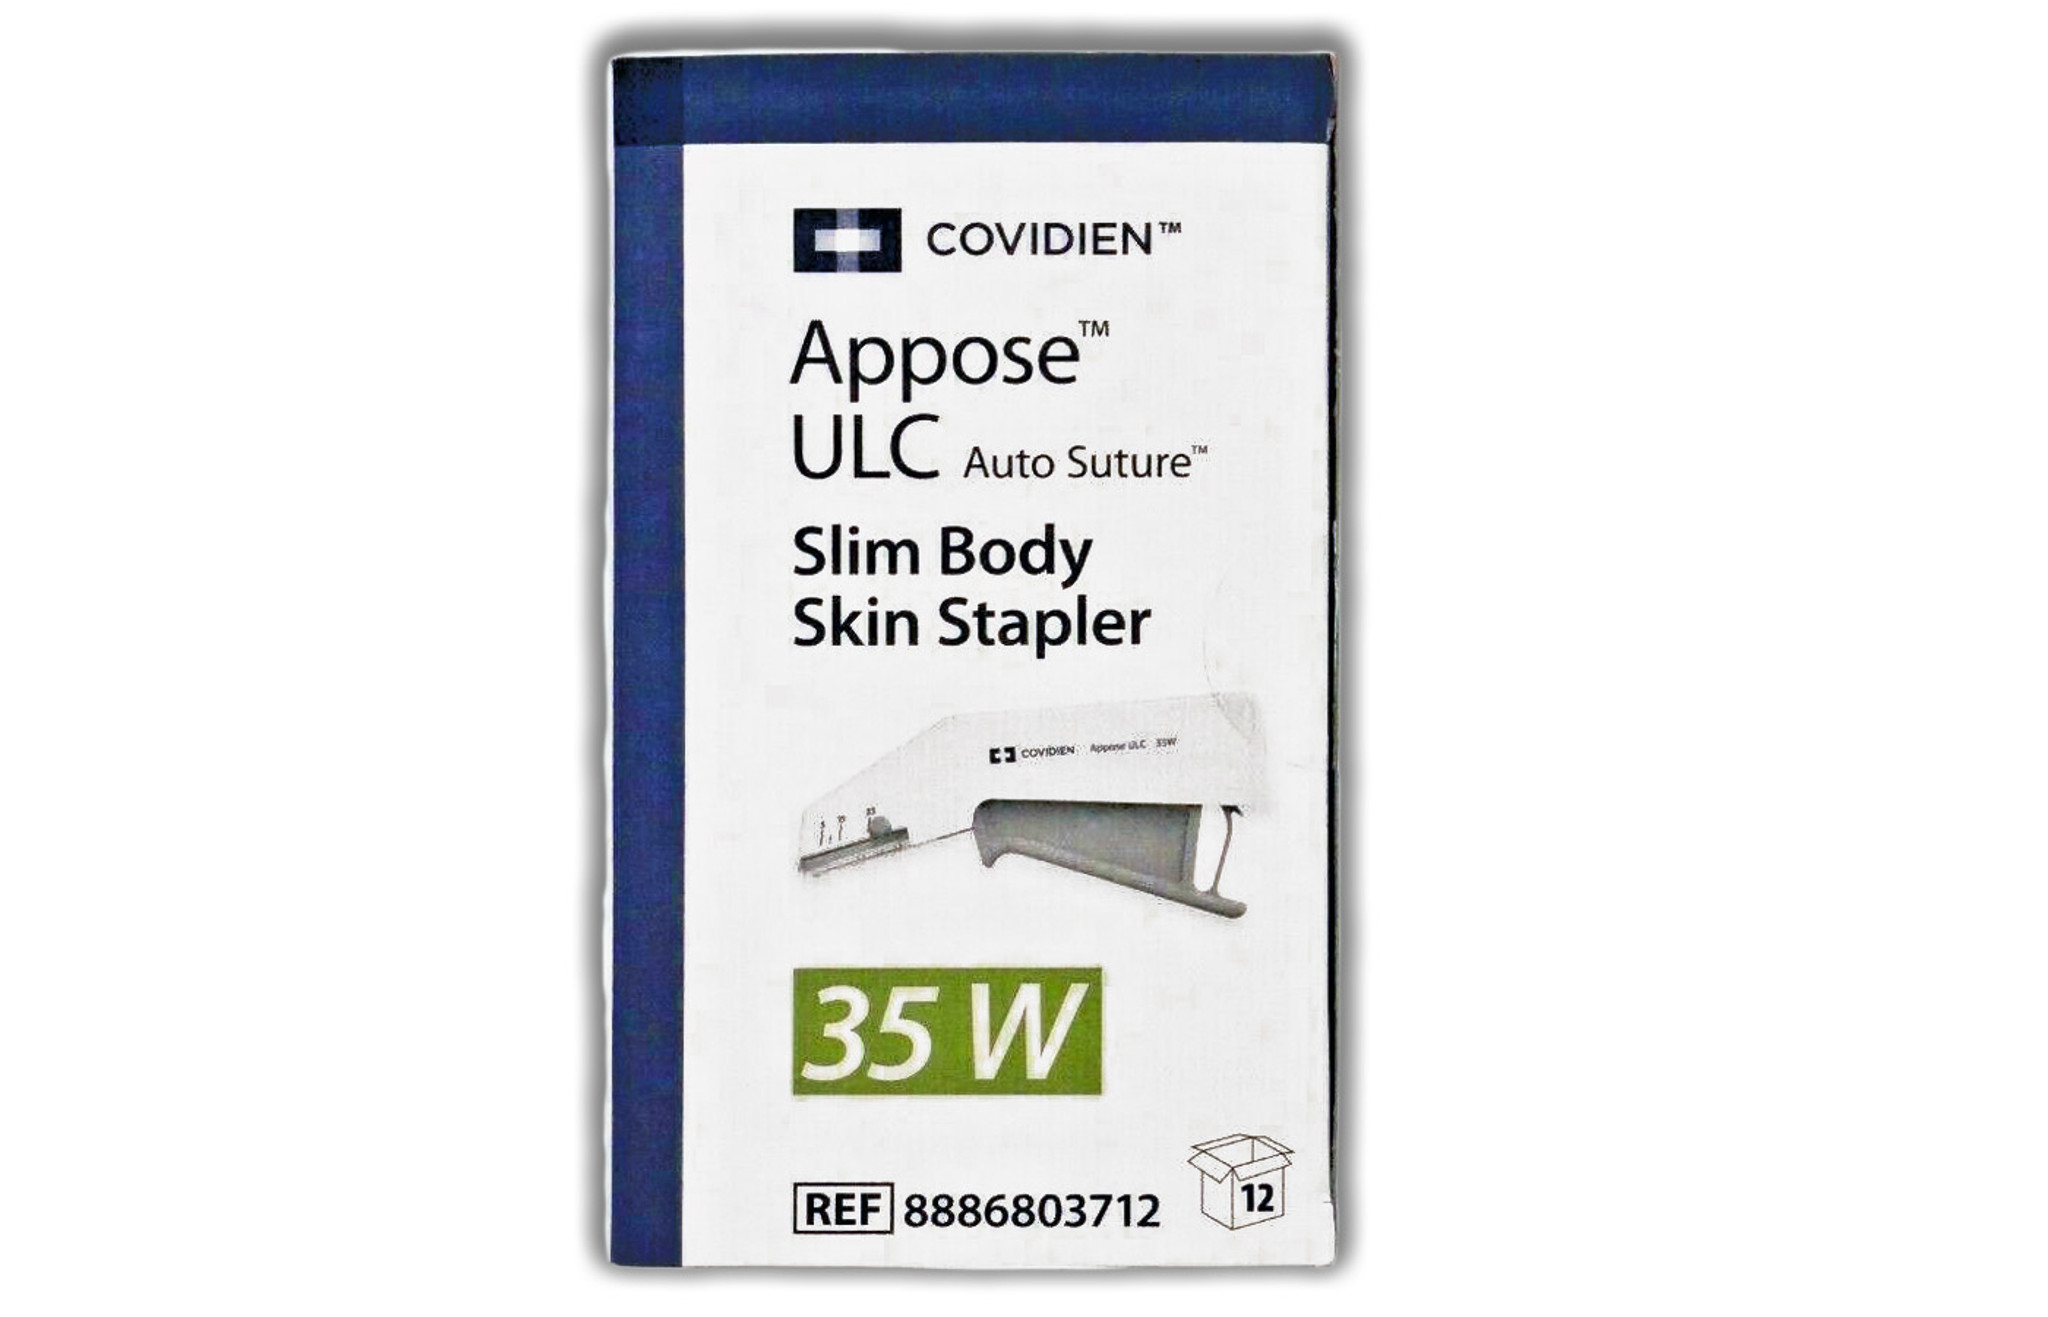 8886803712 - Covidien Appose ULC Slim Body Skin Stapler 35W